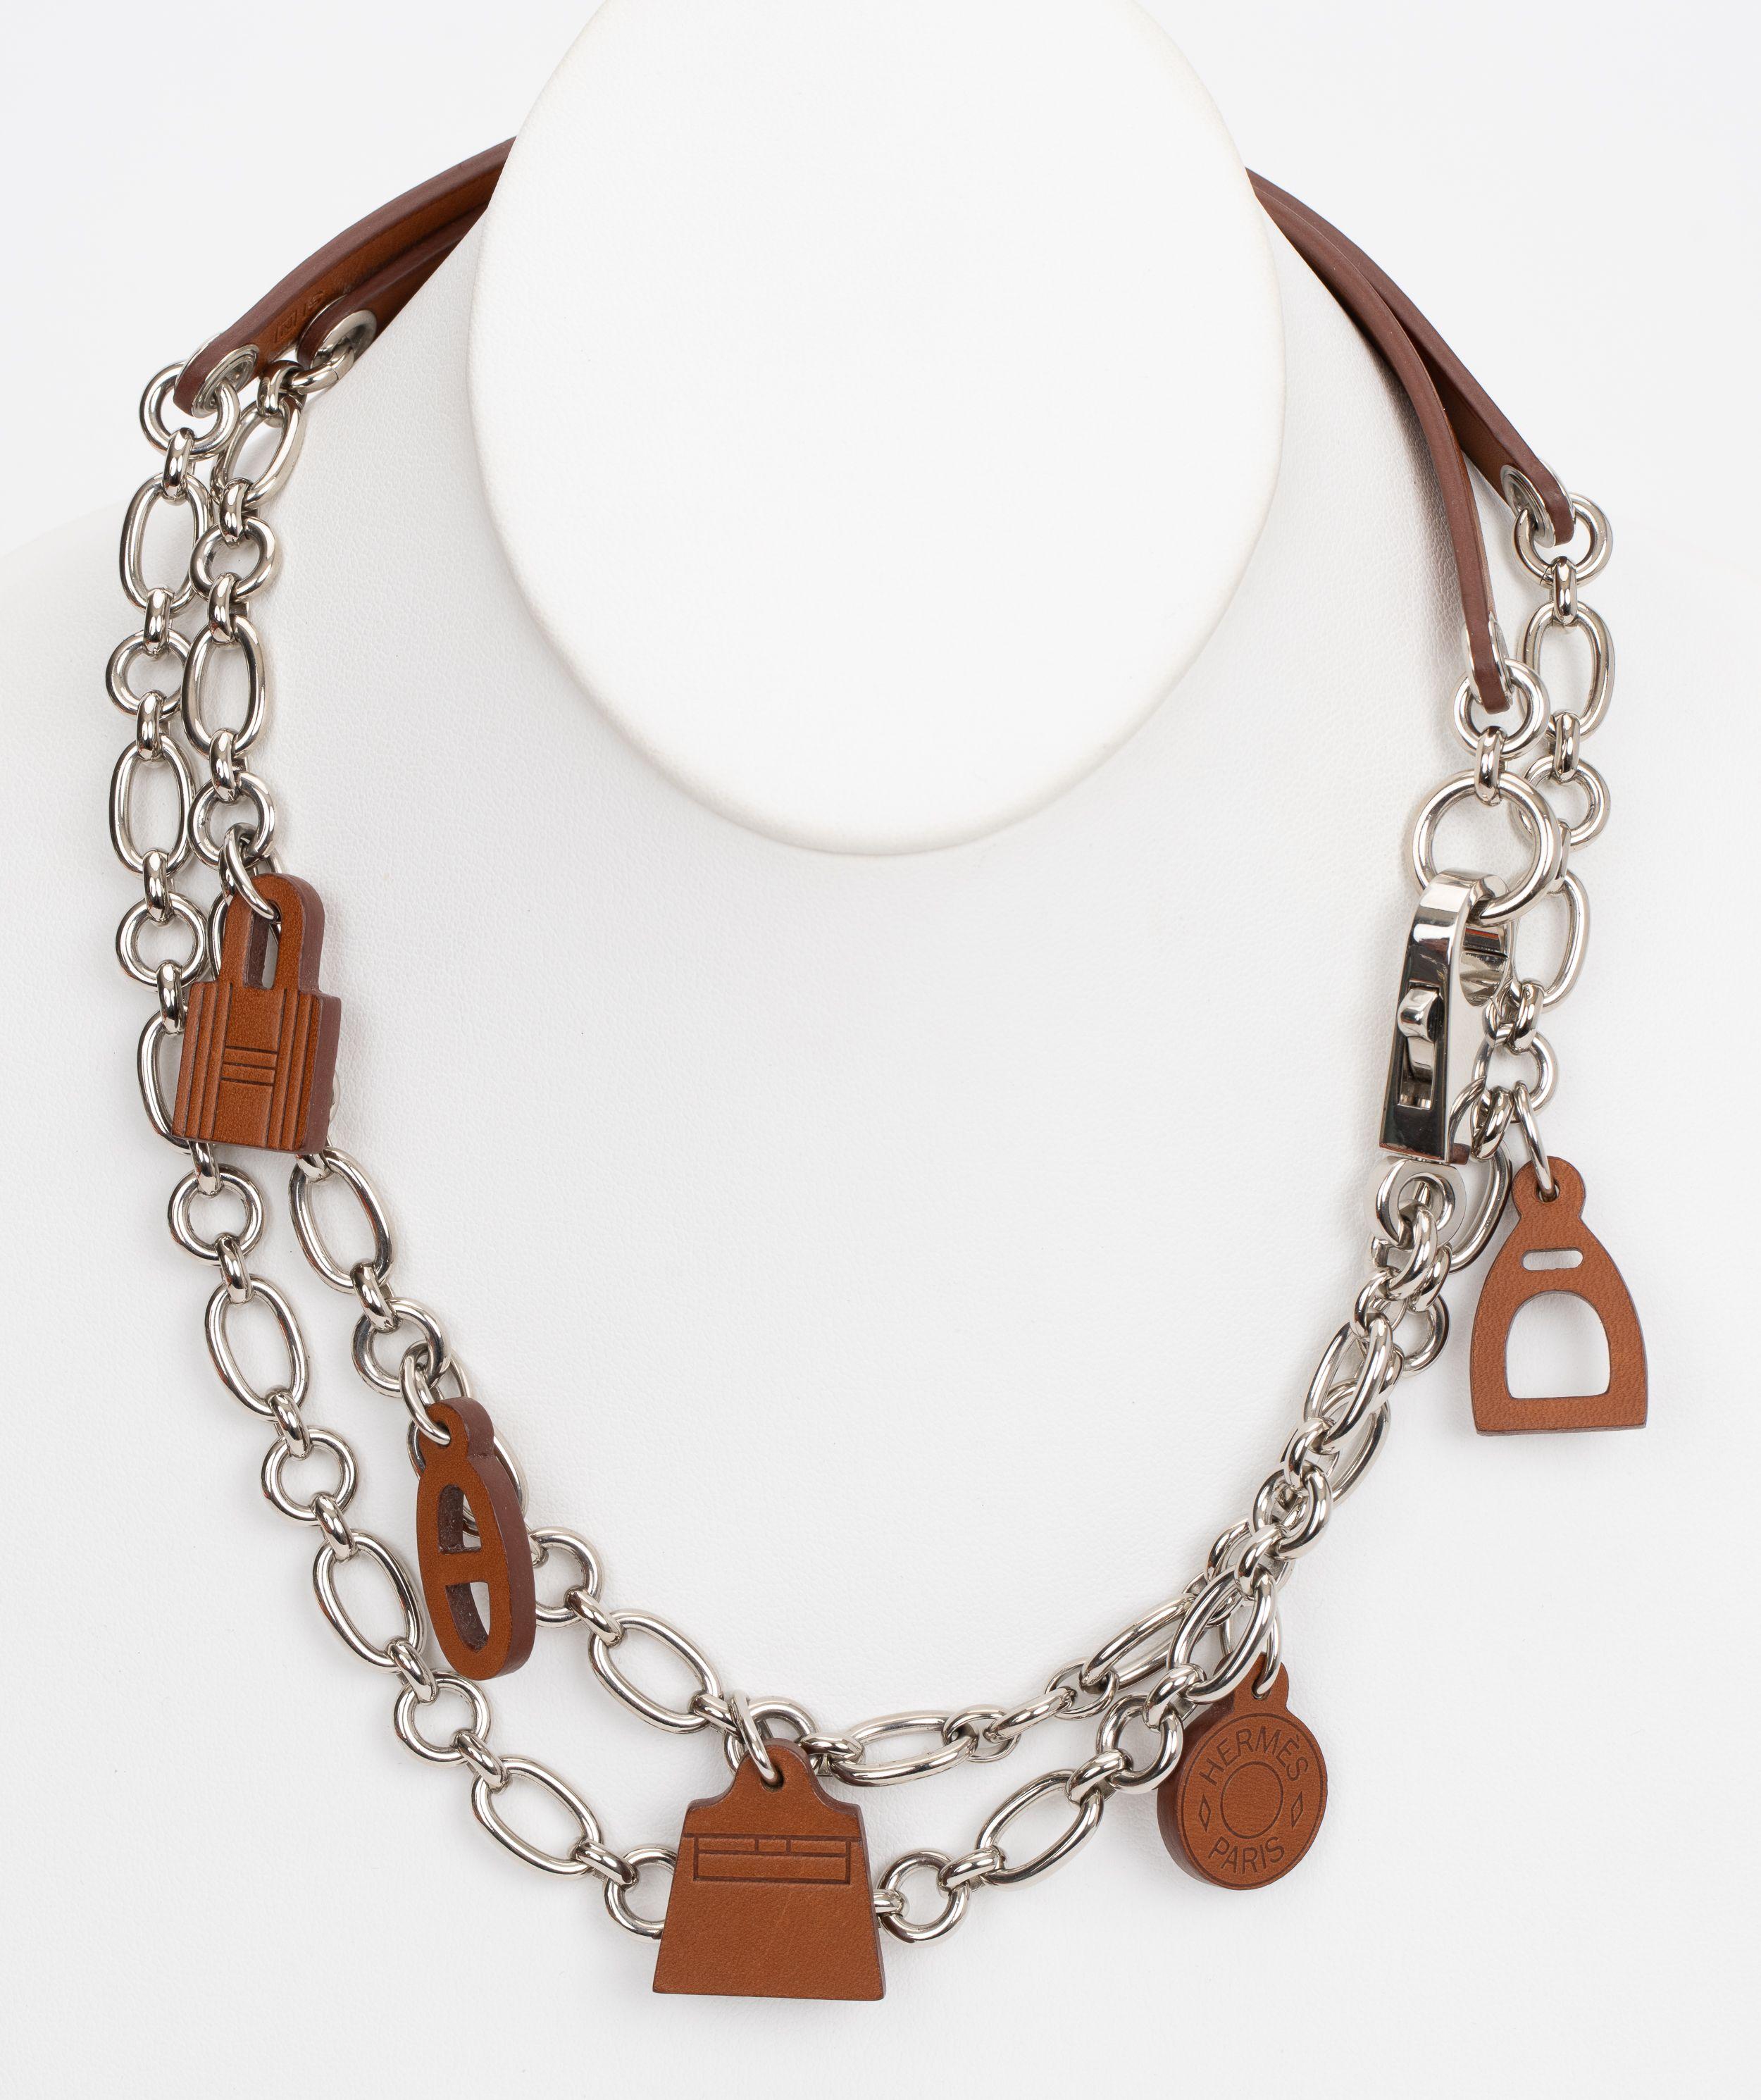 La ceinture Olga d'Hermès en cuir barénia doré et accessoires en palladium. C'est l'accessoire parfait pour votre tenue de jour comme de nuit. Peut être porté comme ceinture ou comme collier. Livré avec sa boîte d'origine.